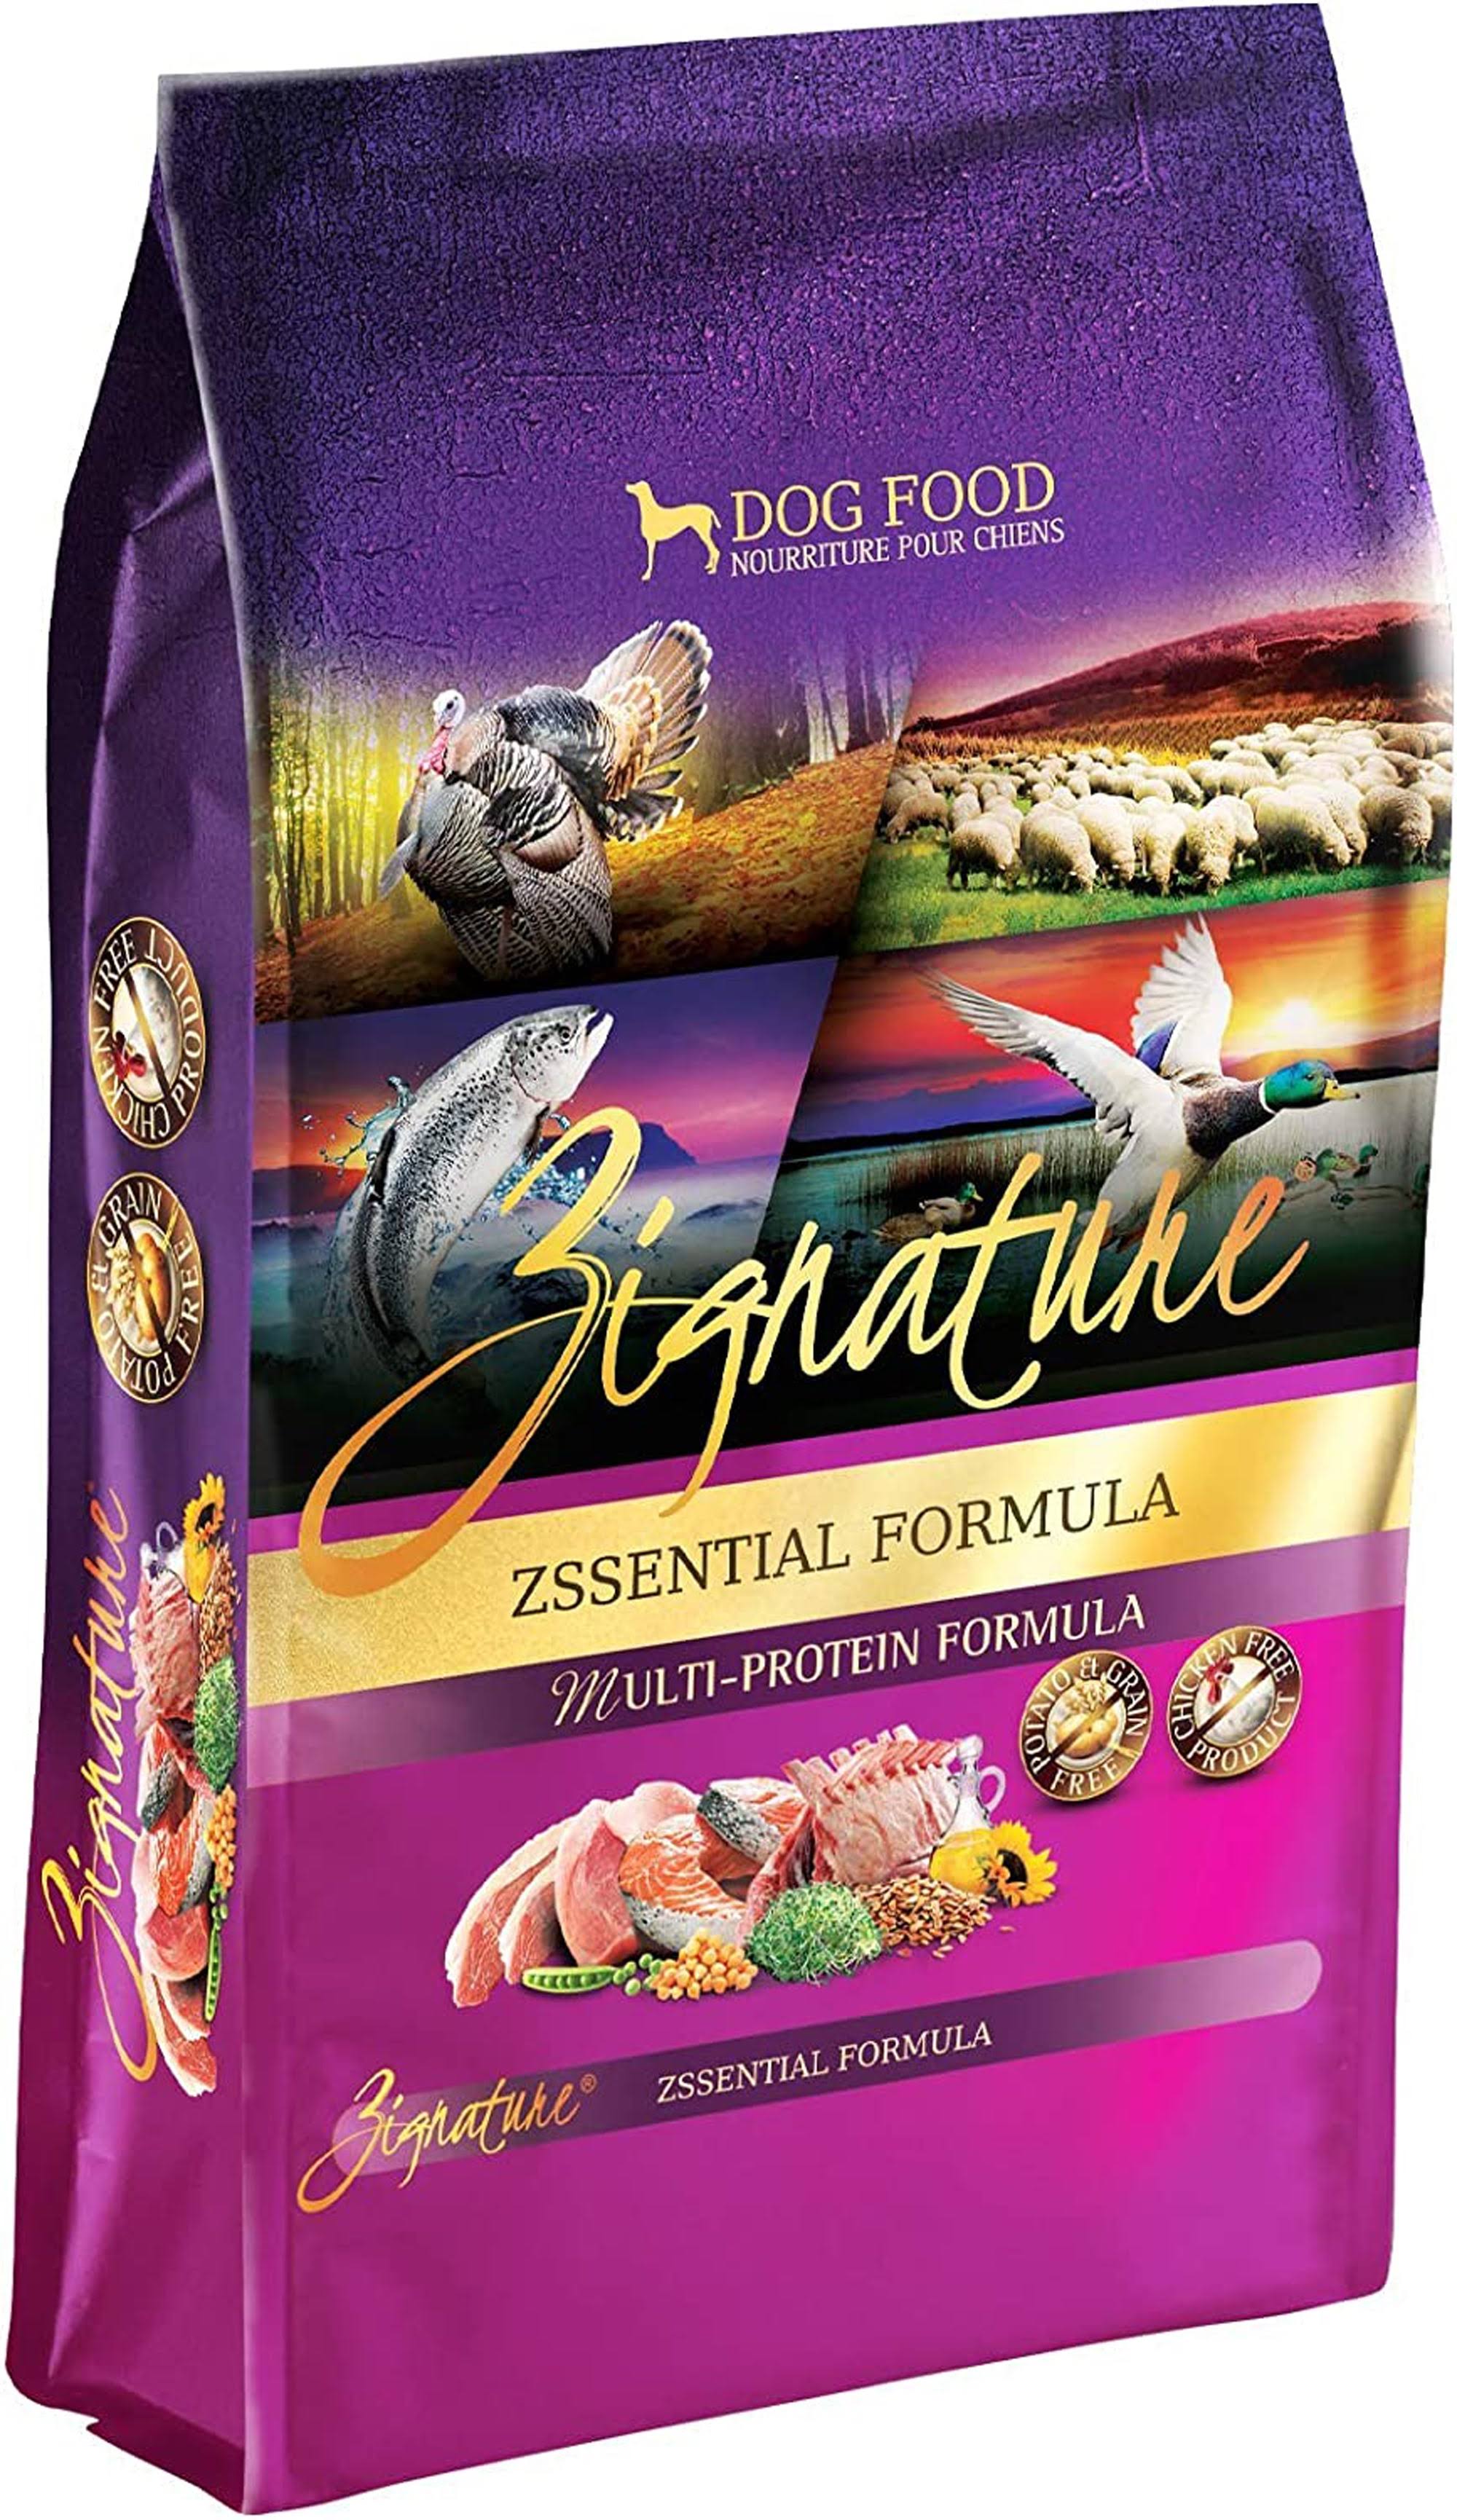 Zignature Zssential Formula Dog Food - 4lbs